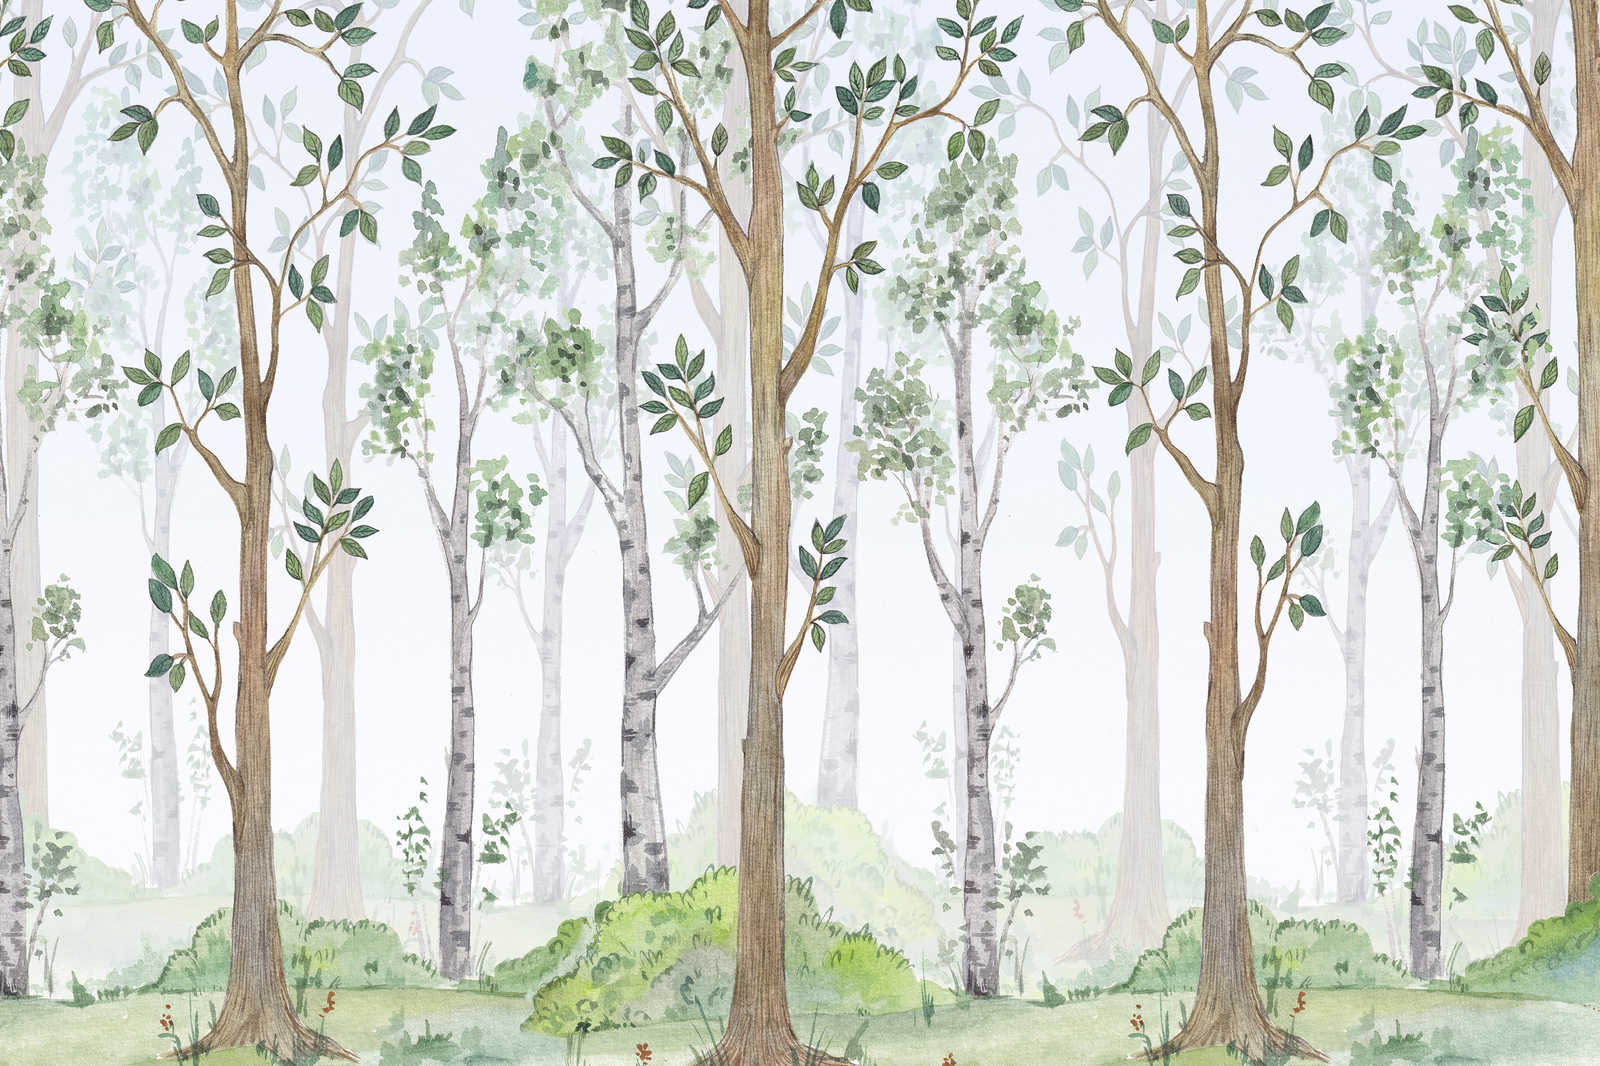             Quadro su tela con foresta dipinta per la camera dei bambini - 0,90 m x 0,60 m
        